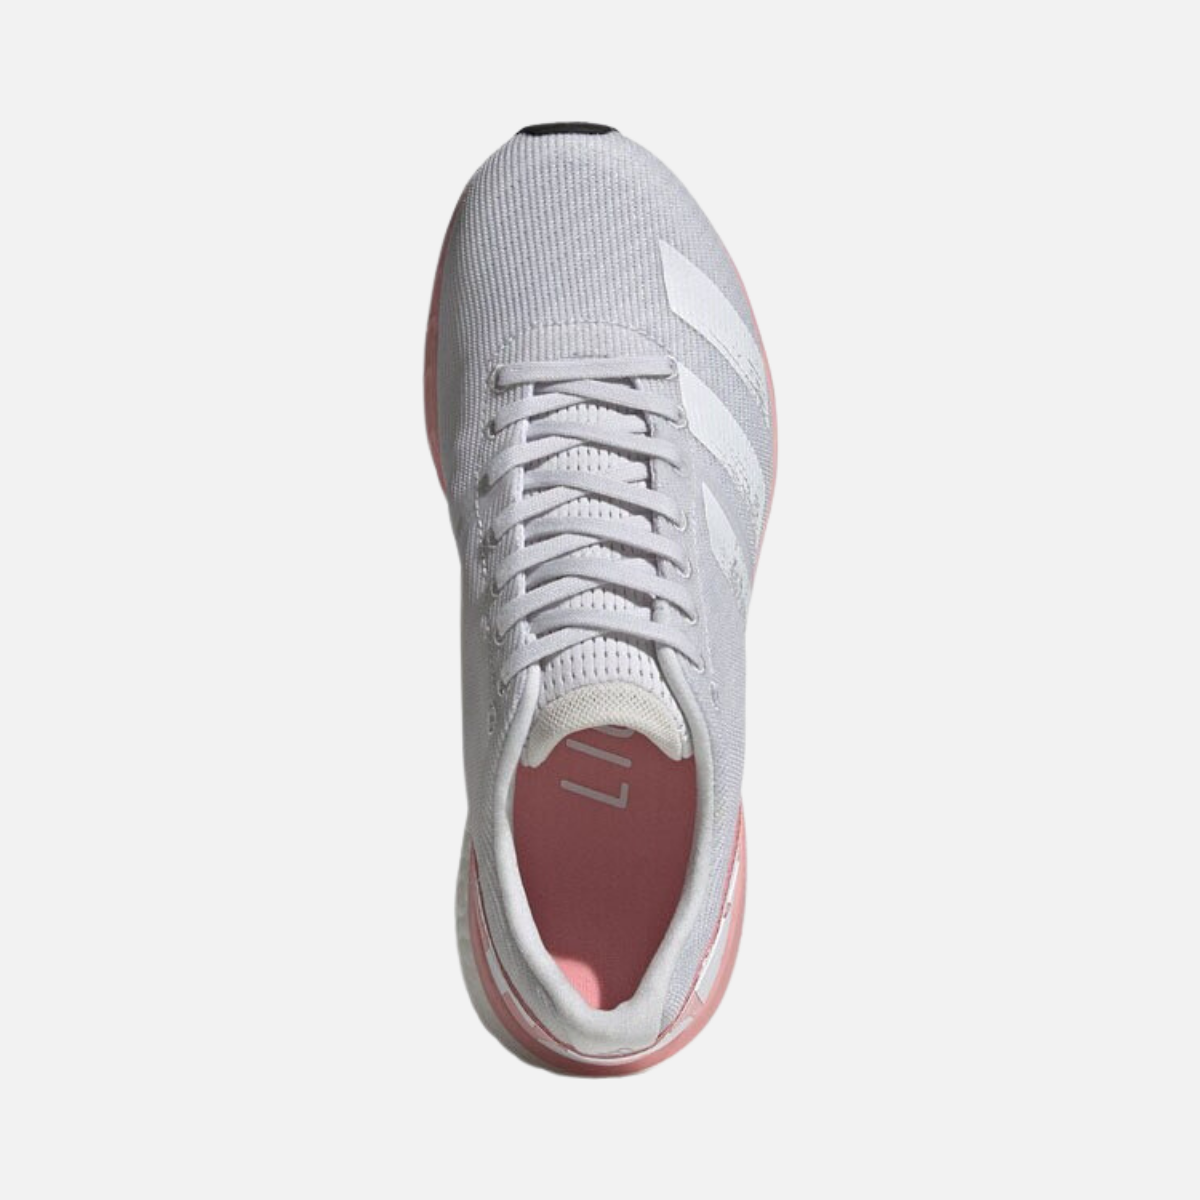 Adidas Adizero Boston 8 Womens Running Shoe -Dash Grey/Cloud White/Glory Pink